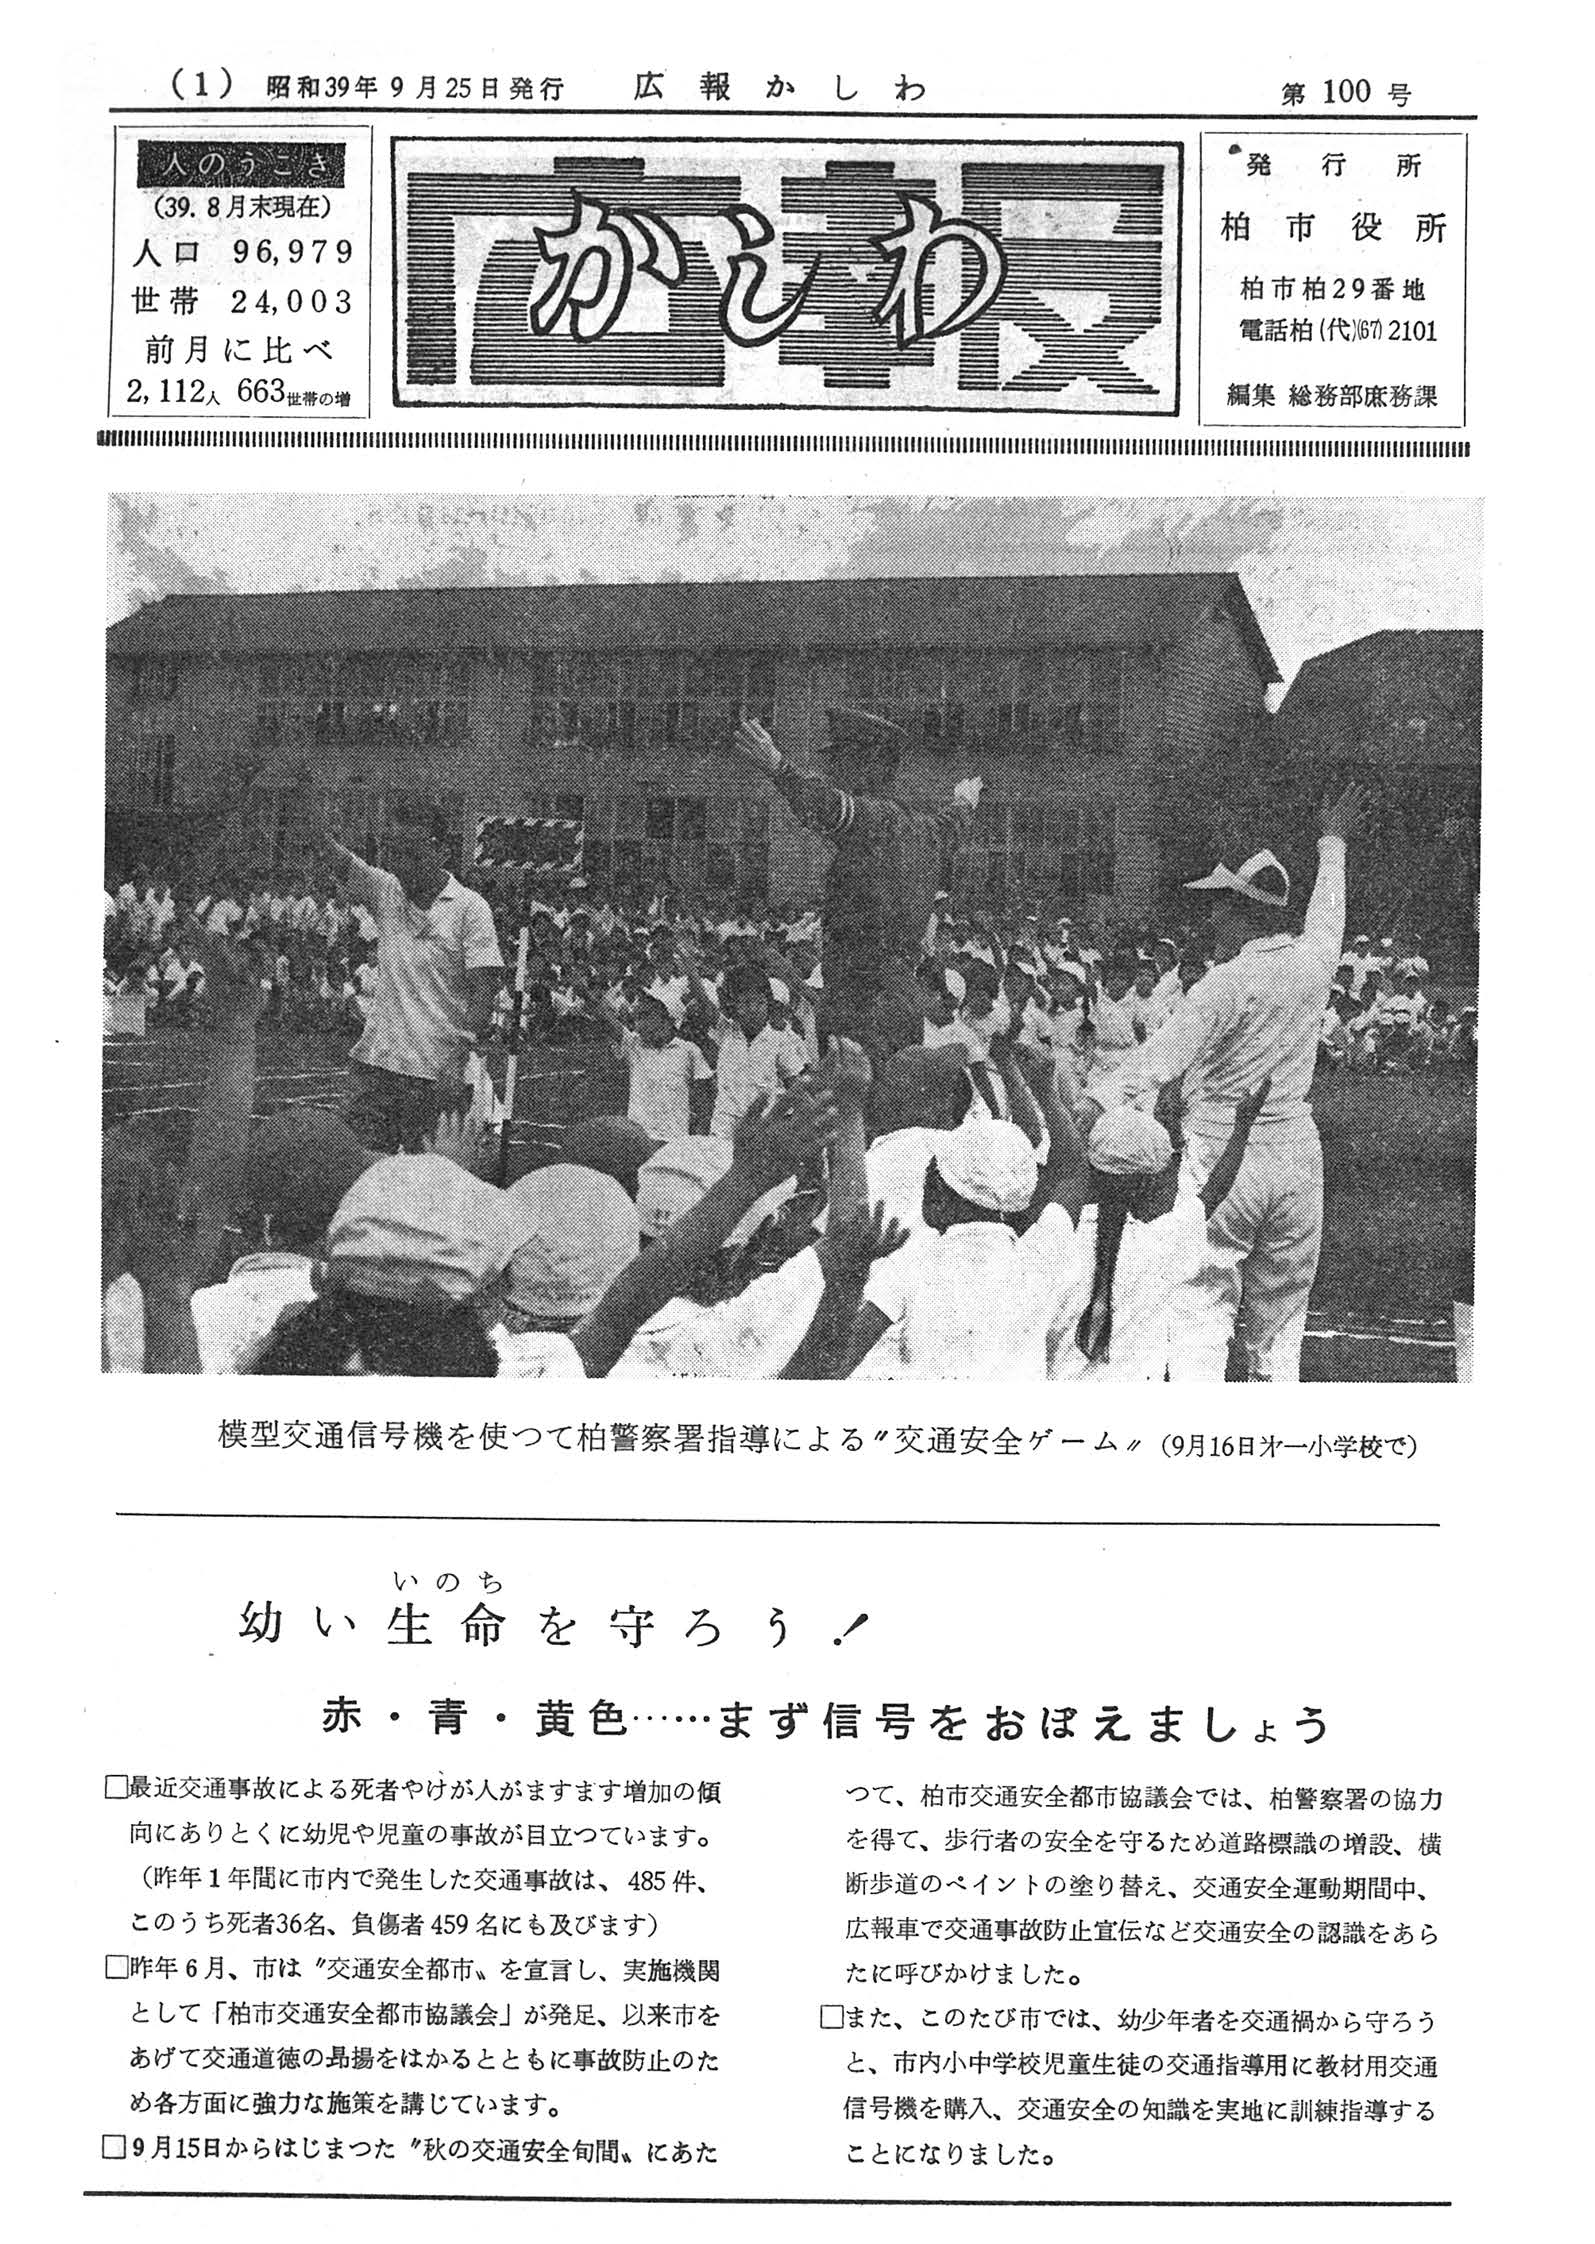 広報かしわ　昭和39年9月25日発行　100号